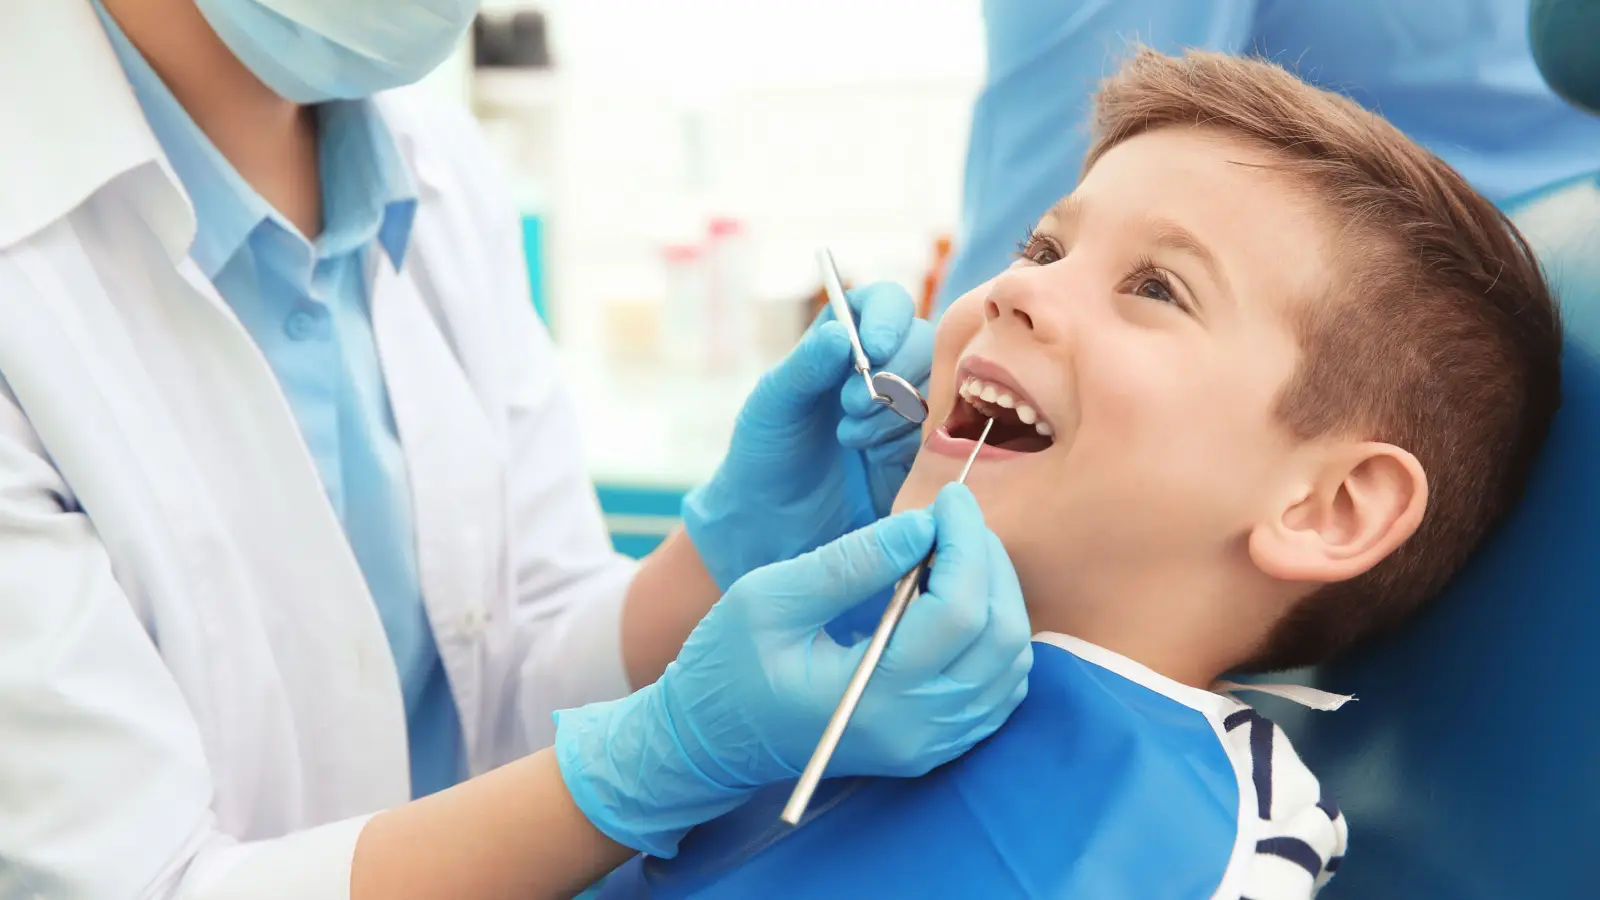 علاج تسوس الاسنان للاطفال